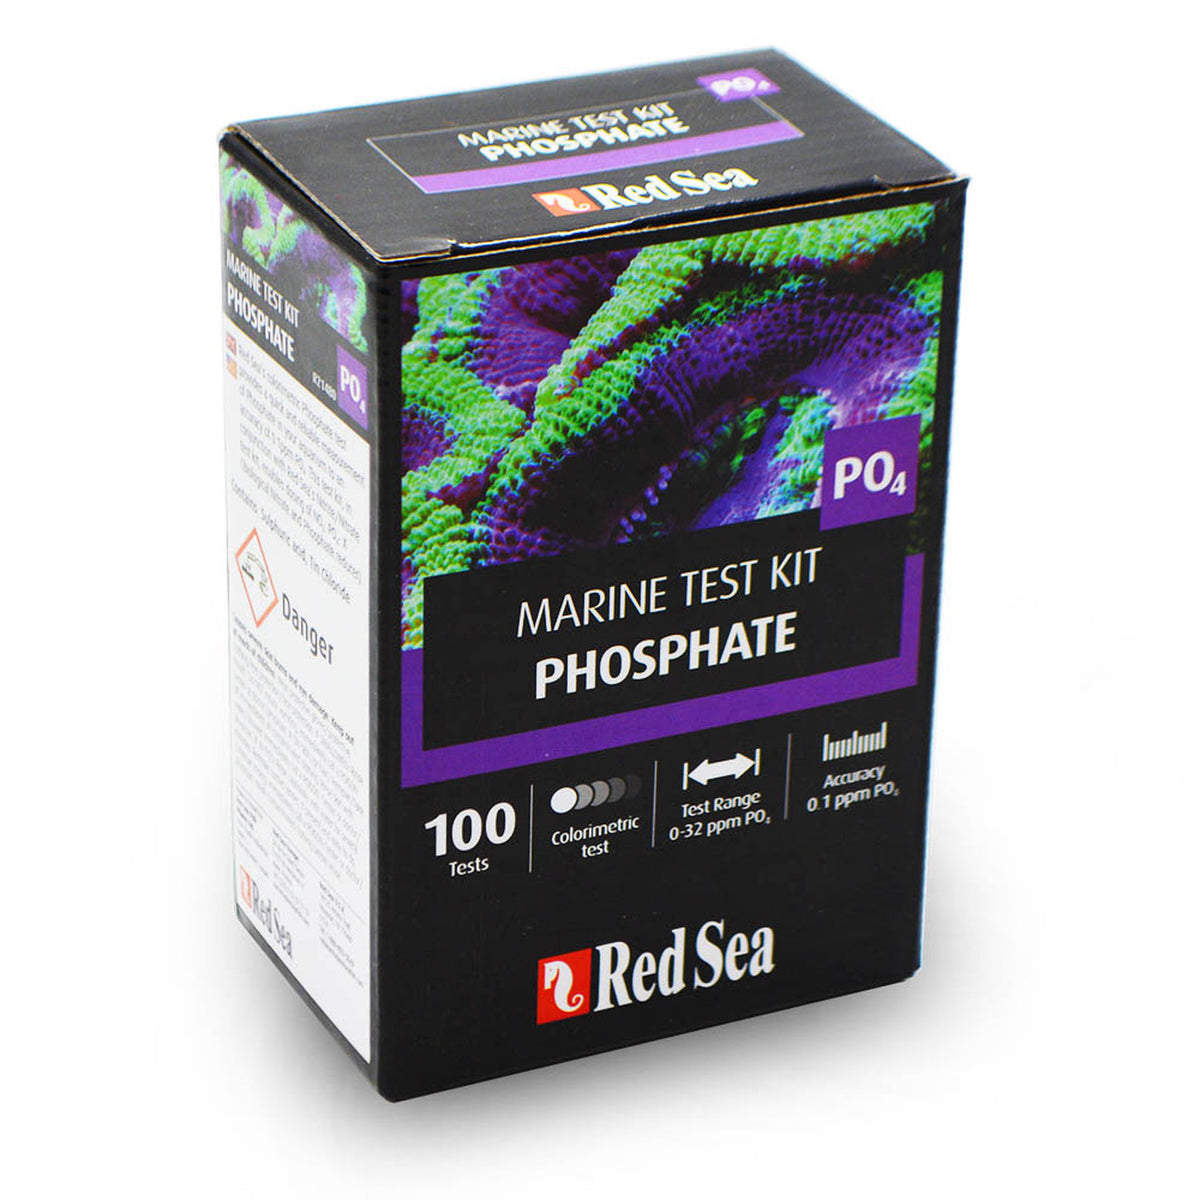 Red Sea Phosphate Test Kit